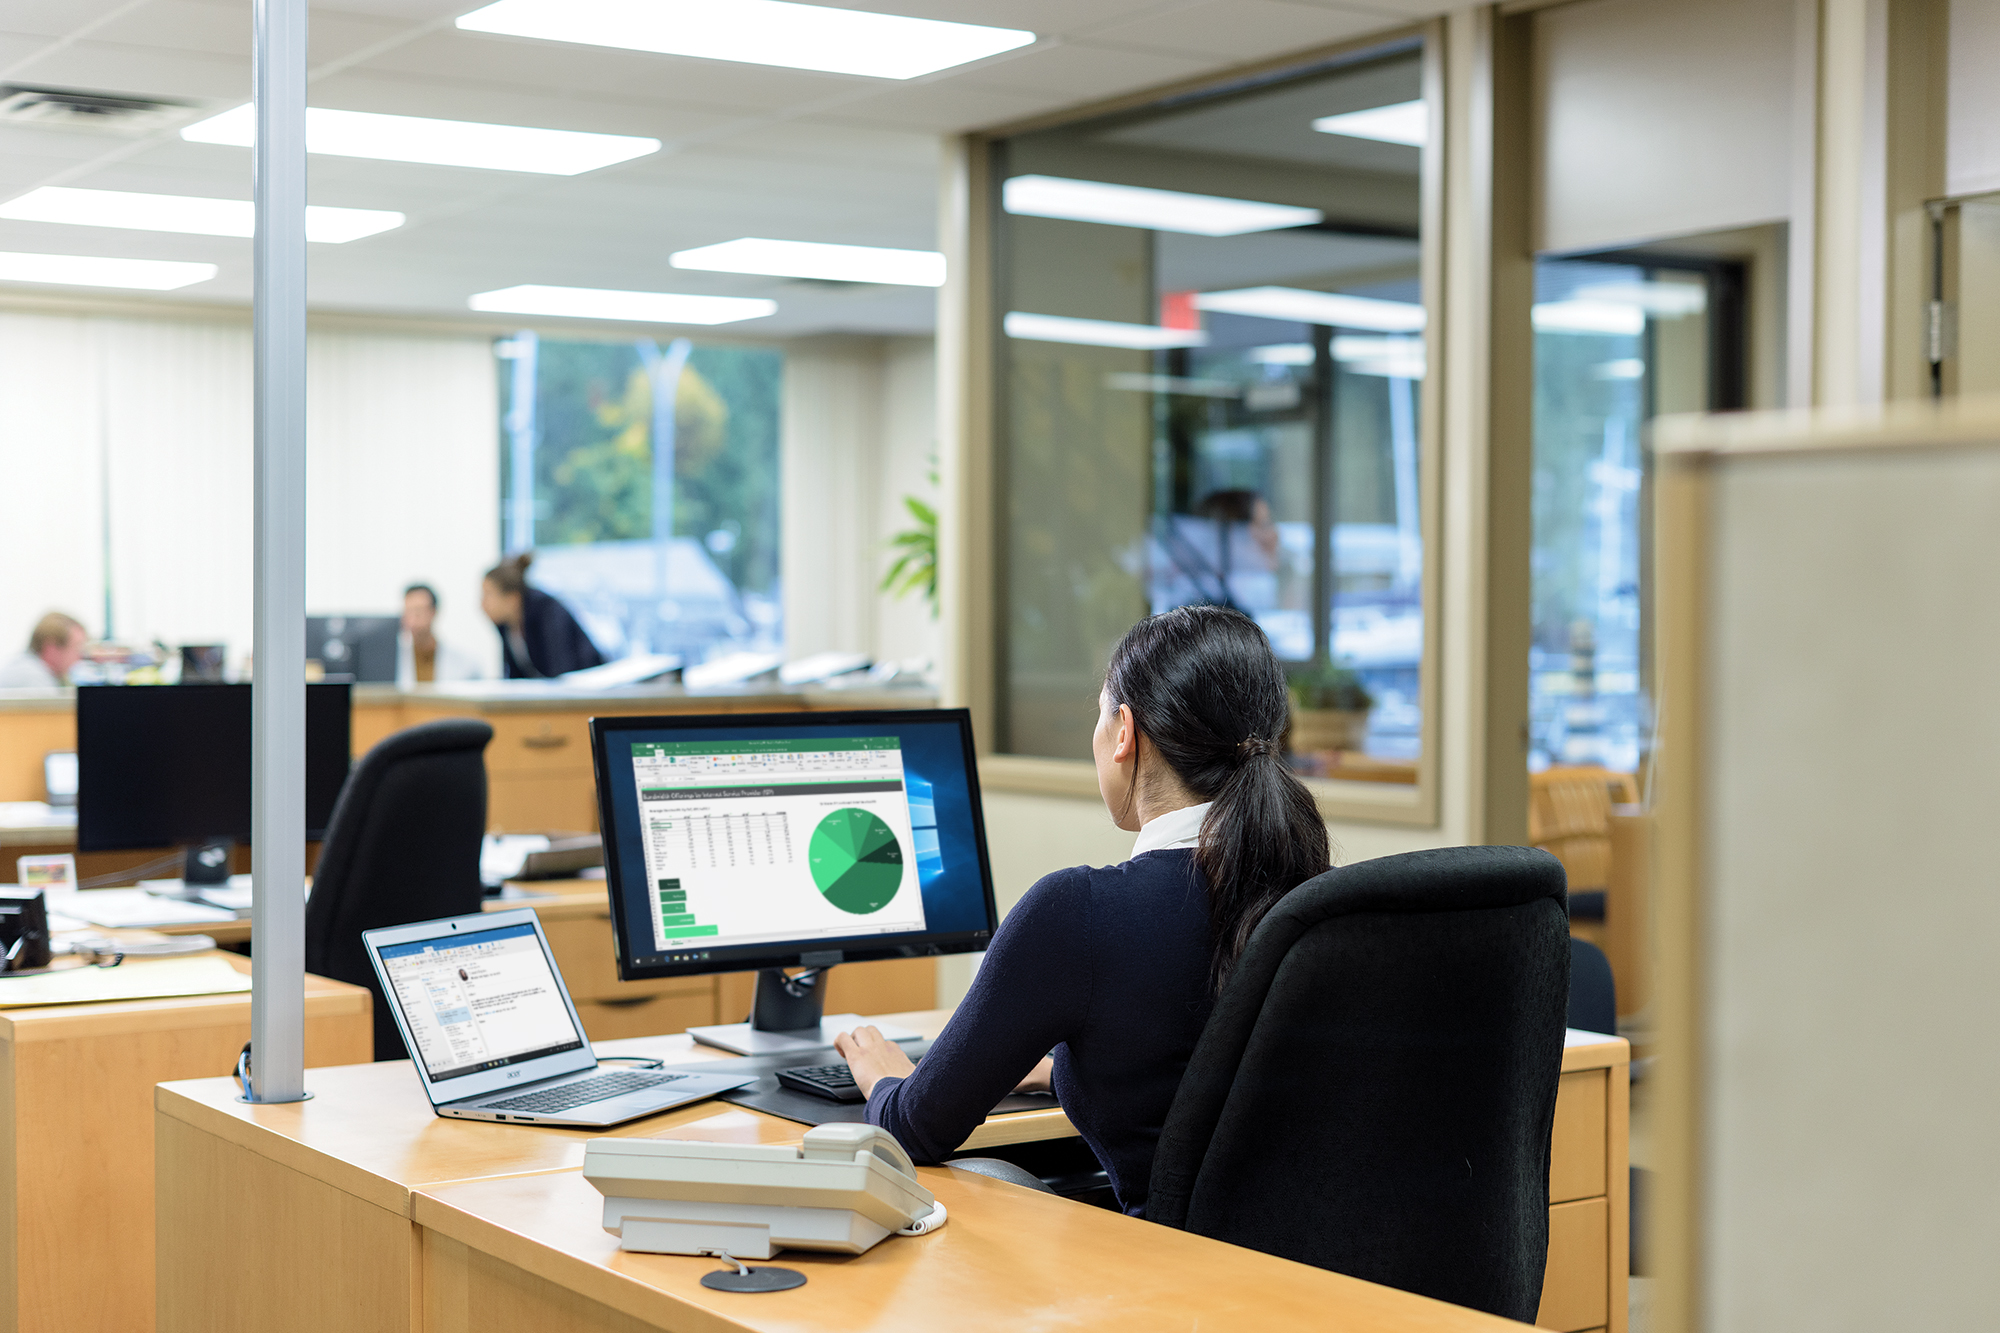 Een kantoormedewerker bekijkt een grafiek en tabellen op een scherm, terwijl anderen op de achtergrond vergaderen.